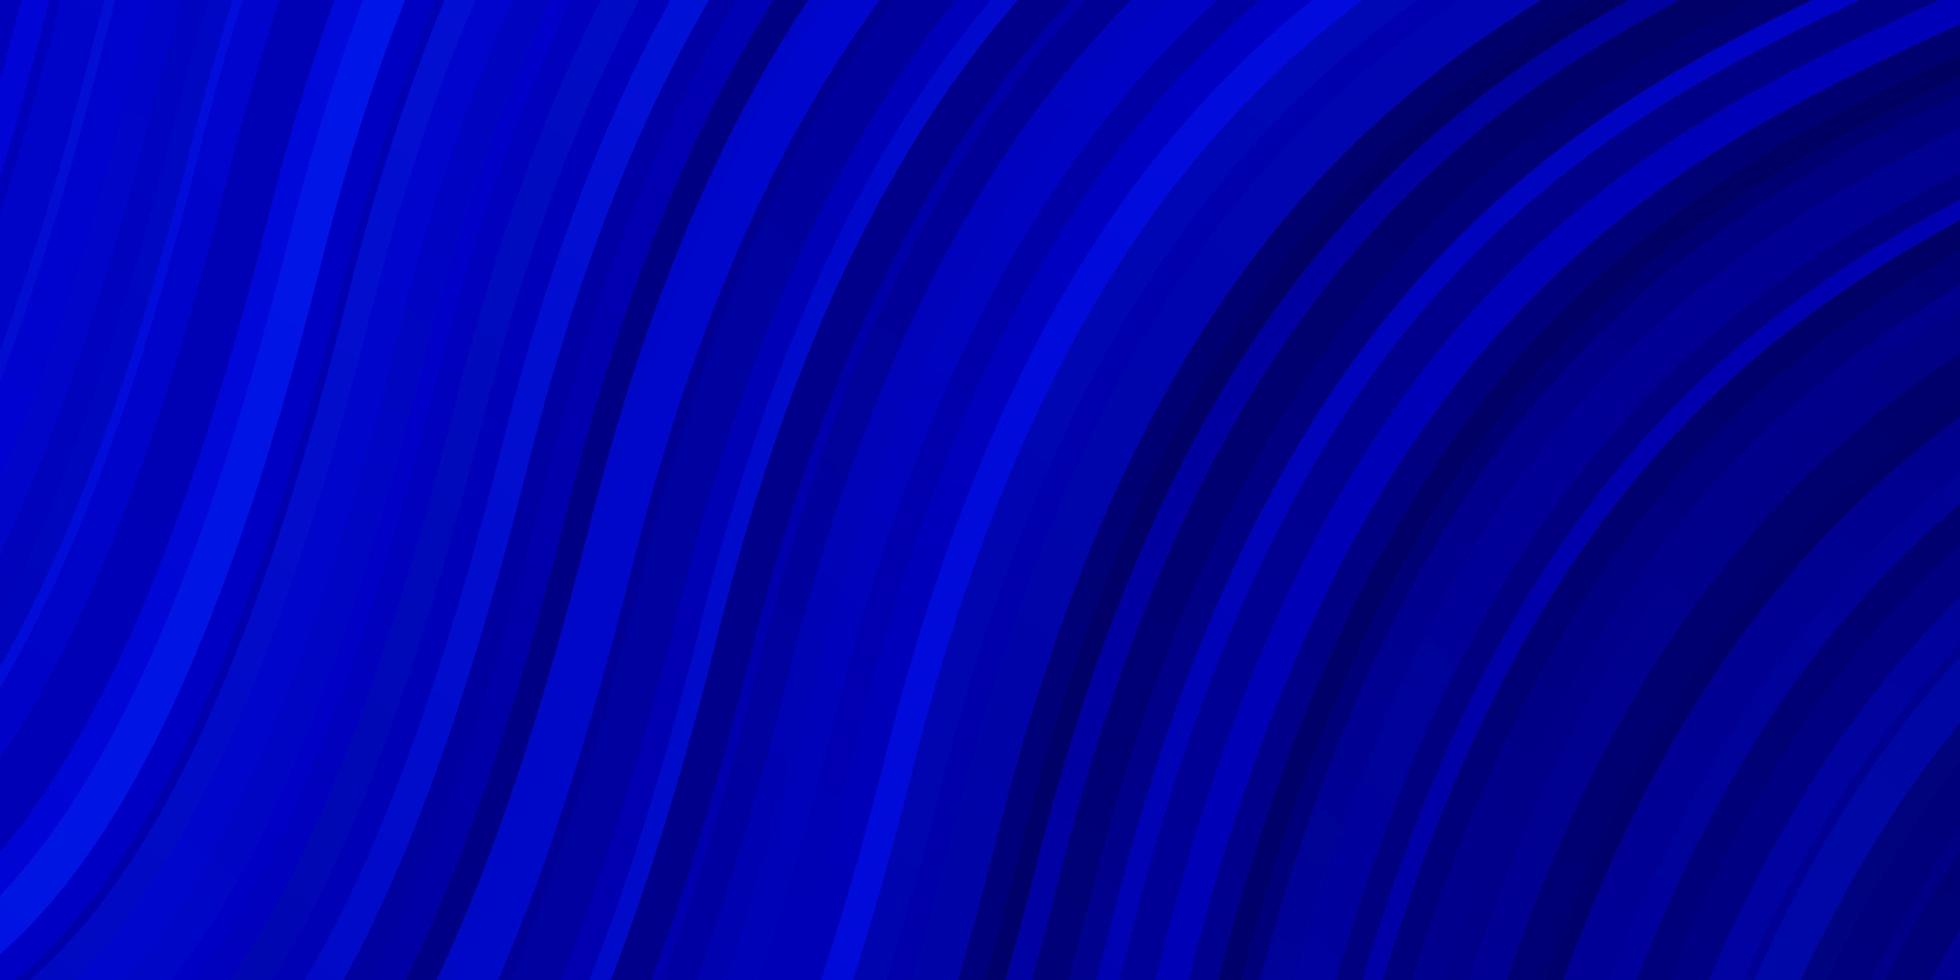 texture vecteur bleu foncé avec des courbes illustration abstraite avec des lignes de dégradé bandy pour la promotion de votre entreprise